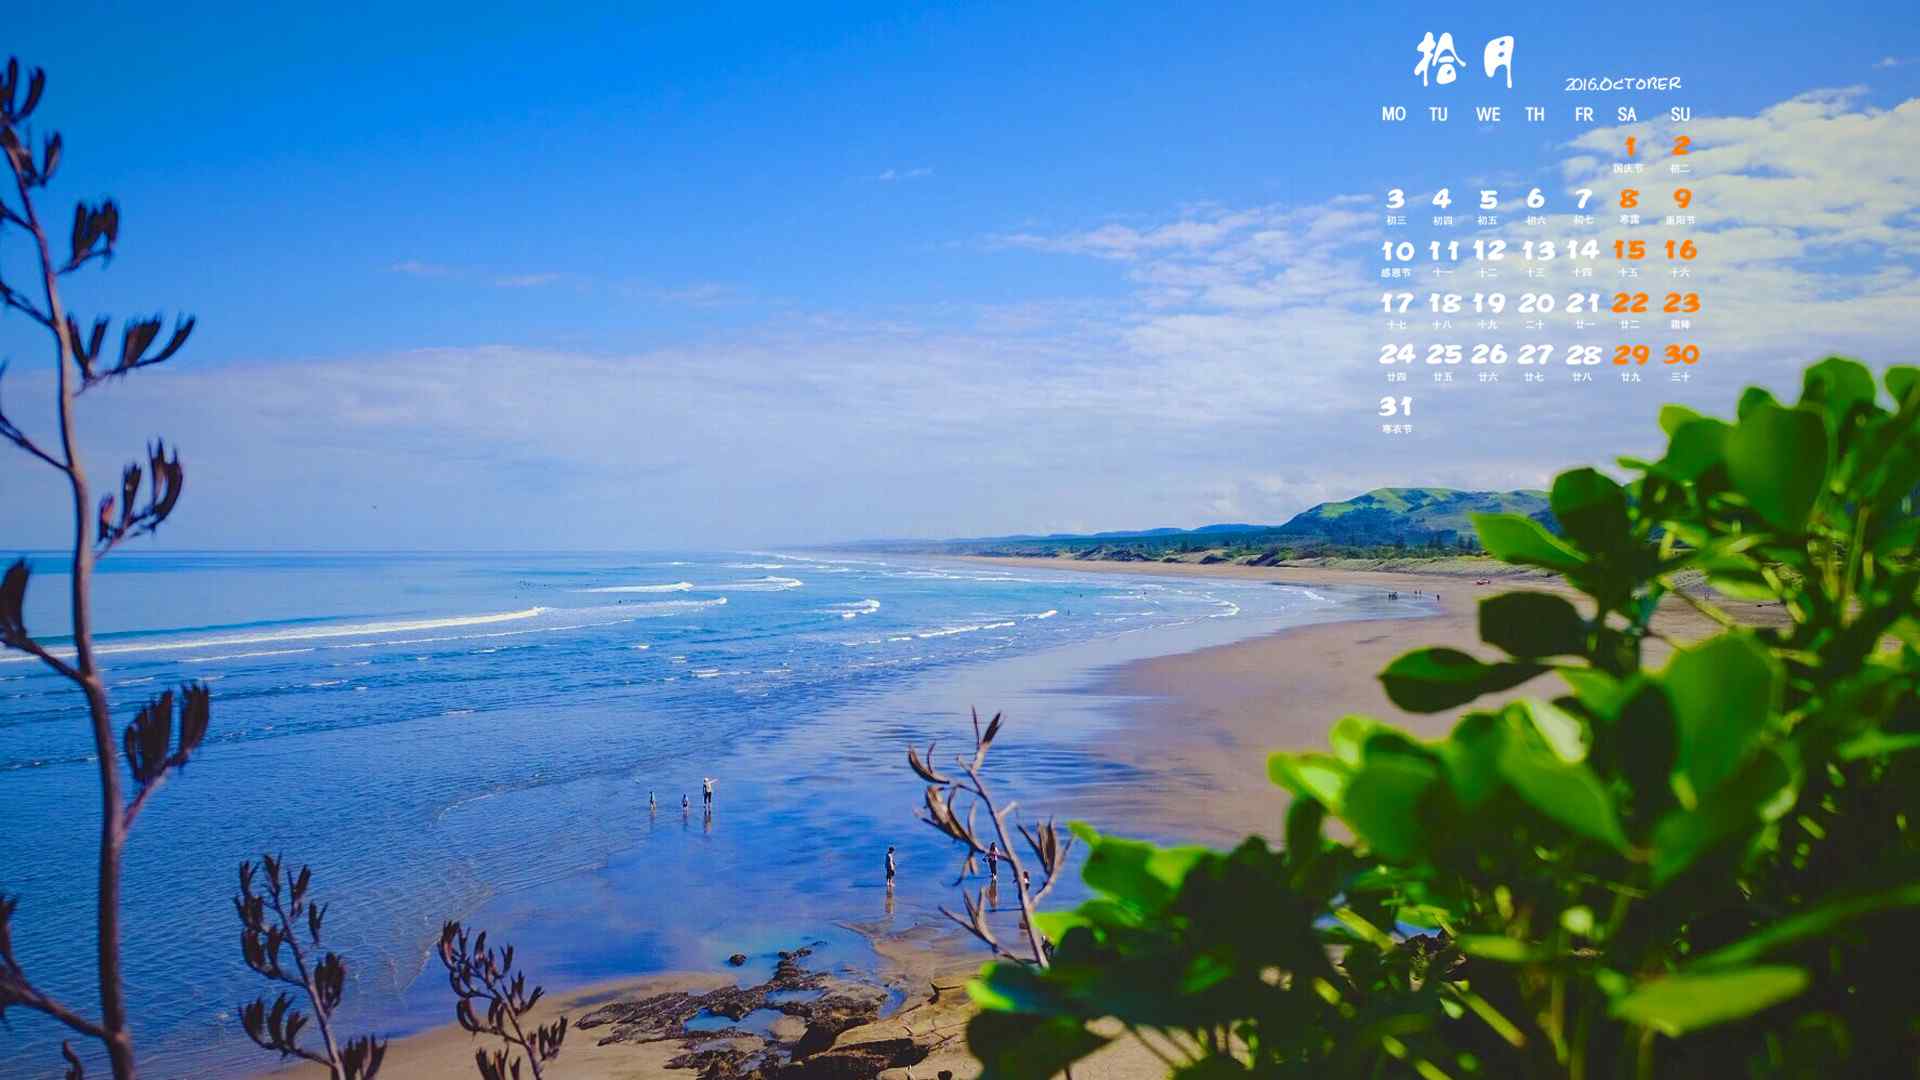 2016年10月日历沙滩海浪风景桌面壁纸